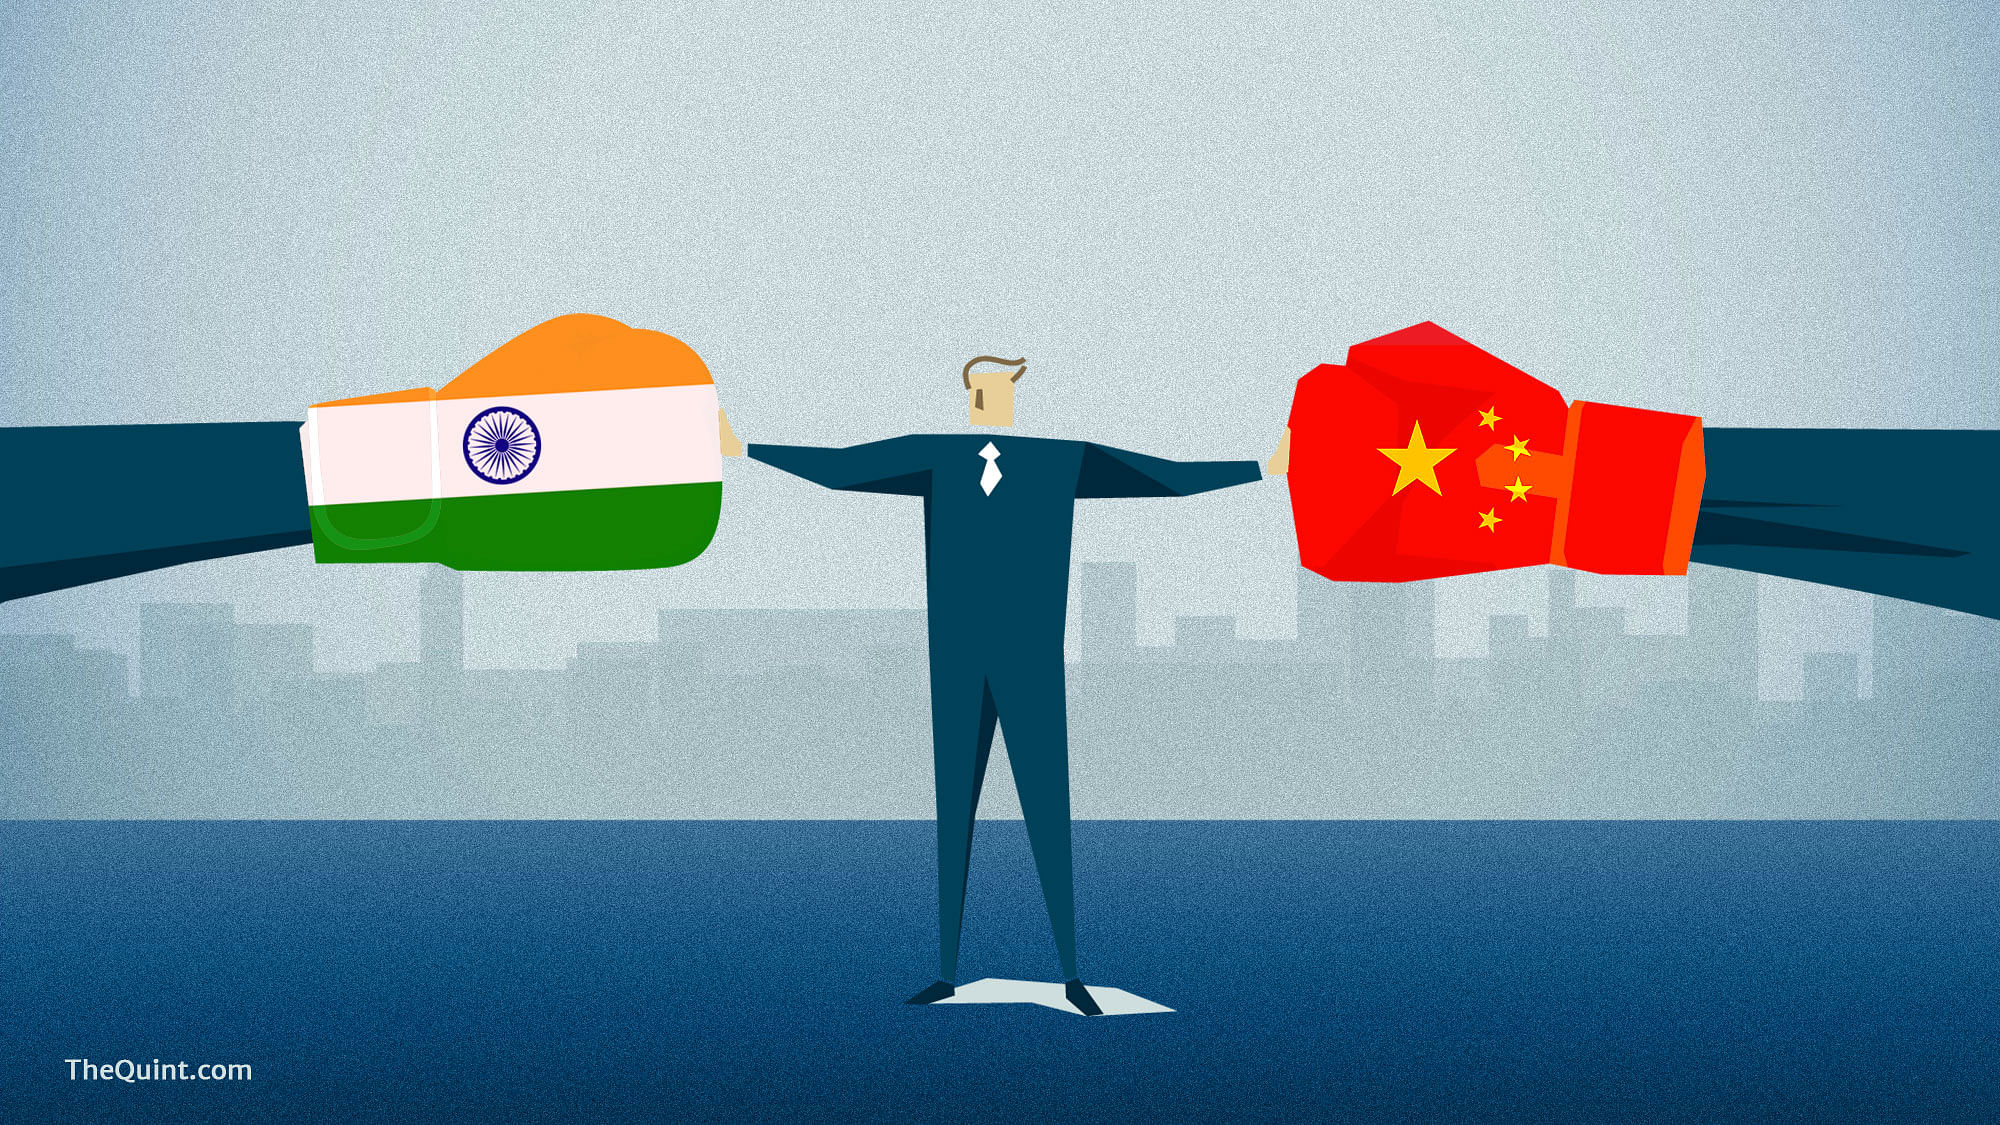  चीन की ‘ये खान की खुदाई’ भारत के साथ टकराव की एक नई वजह बन सकती है.